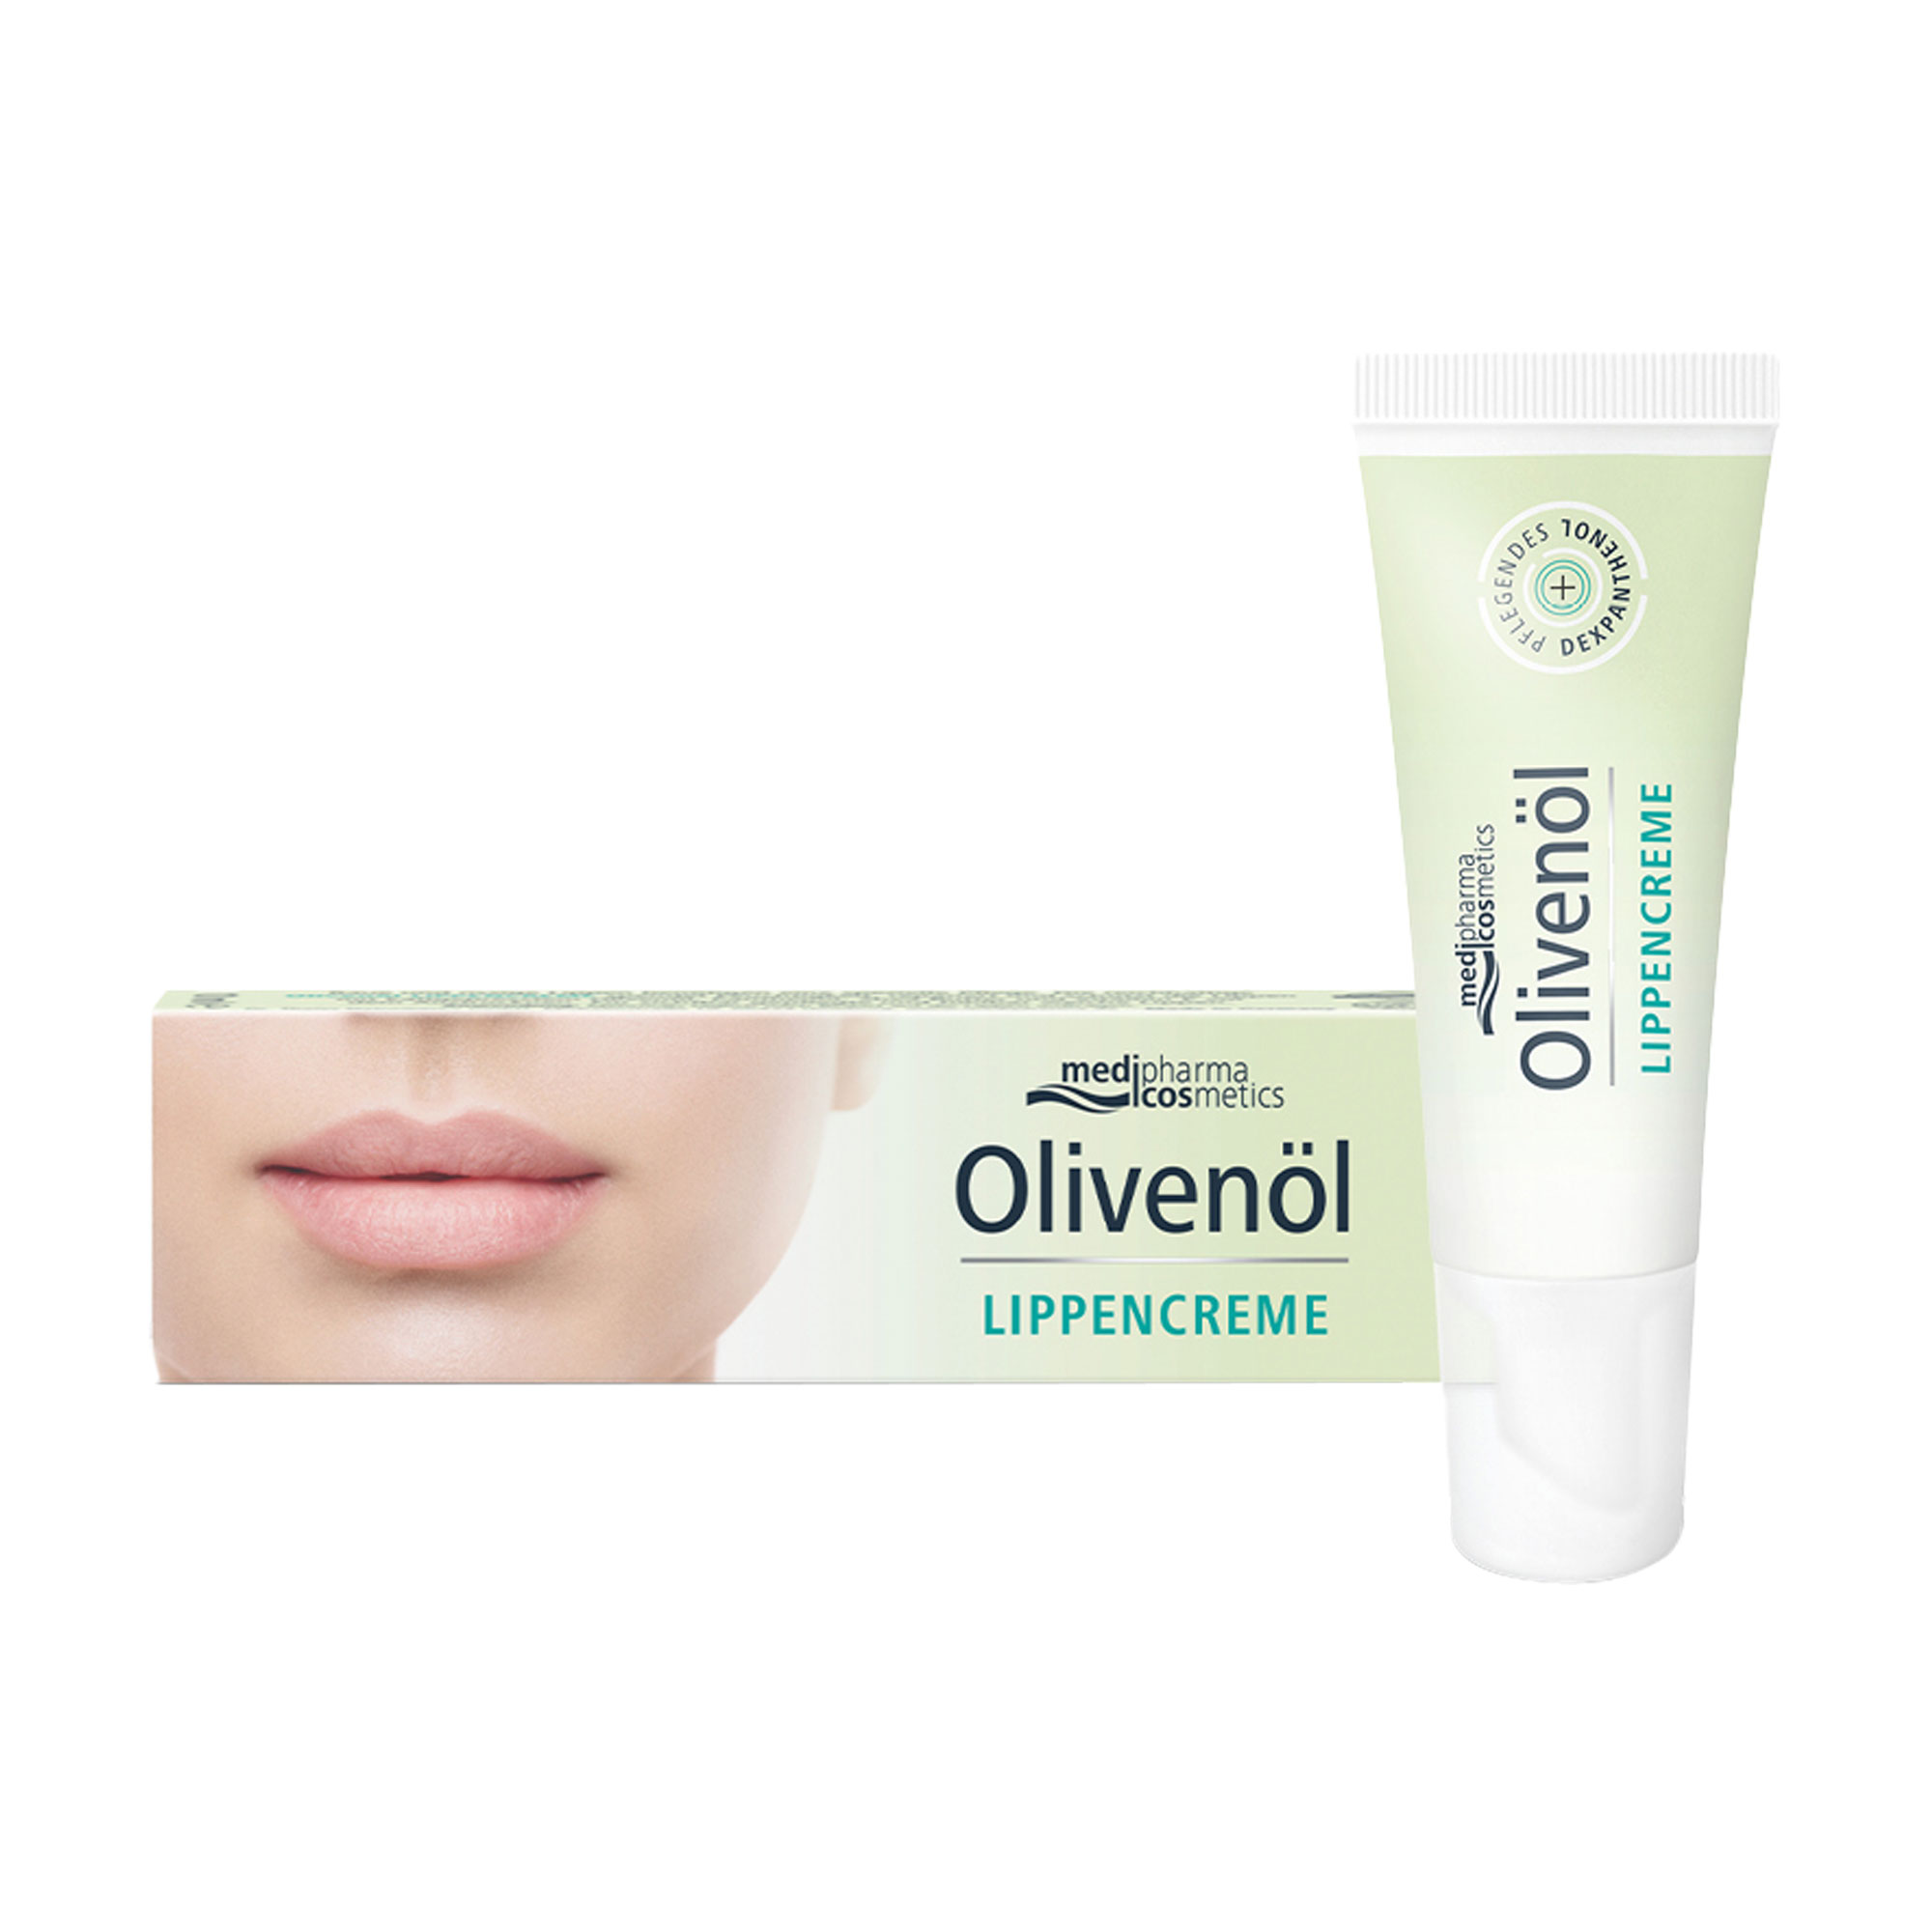 Lippencreme mit Olivenöl und Sheabutter zur Pflege von trockenen, rissigen Lippen.